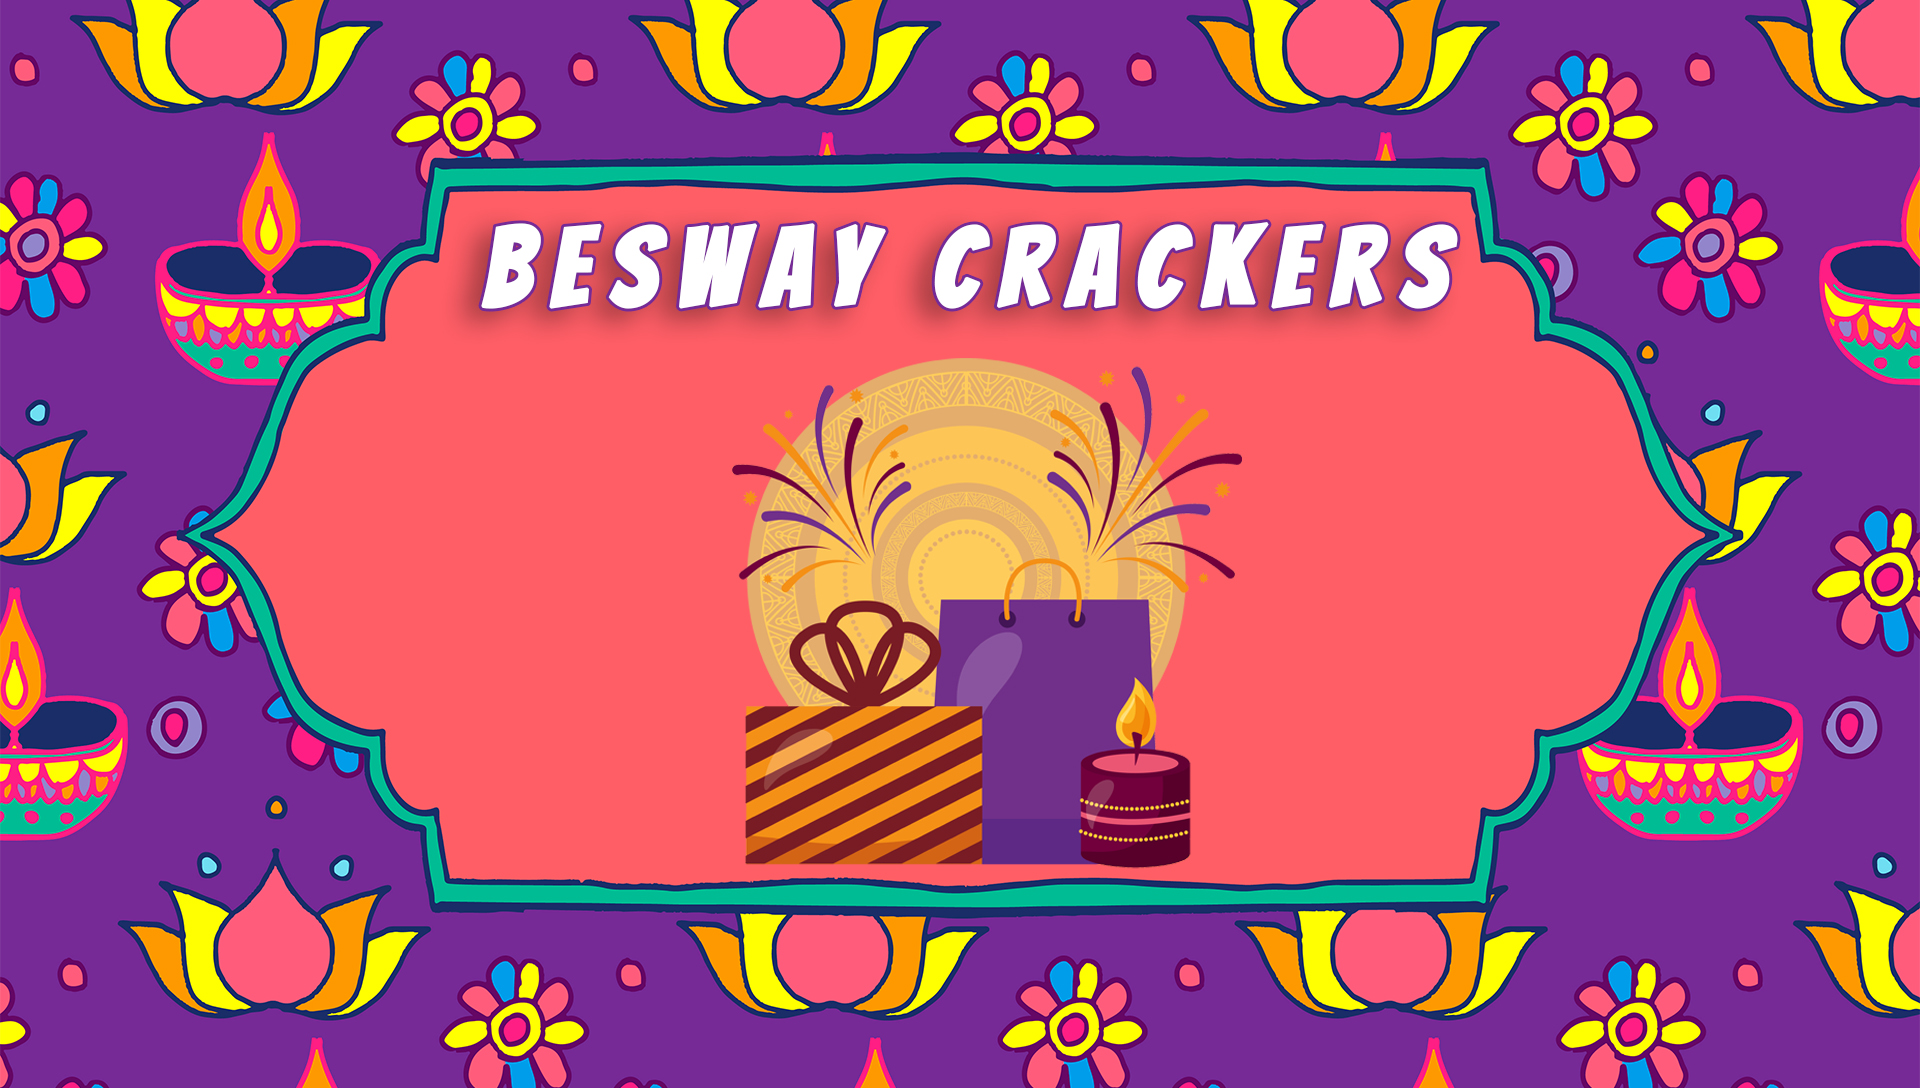 Besway Crackers Sivakasi